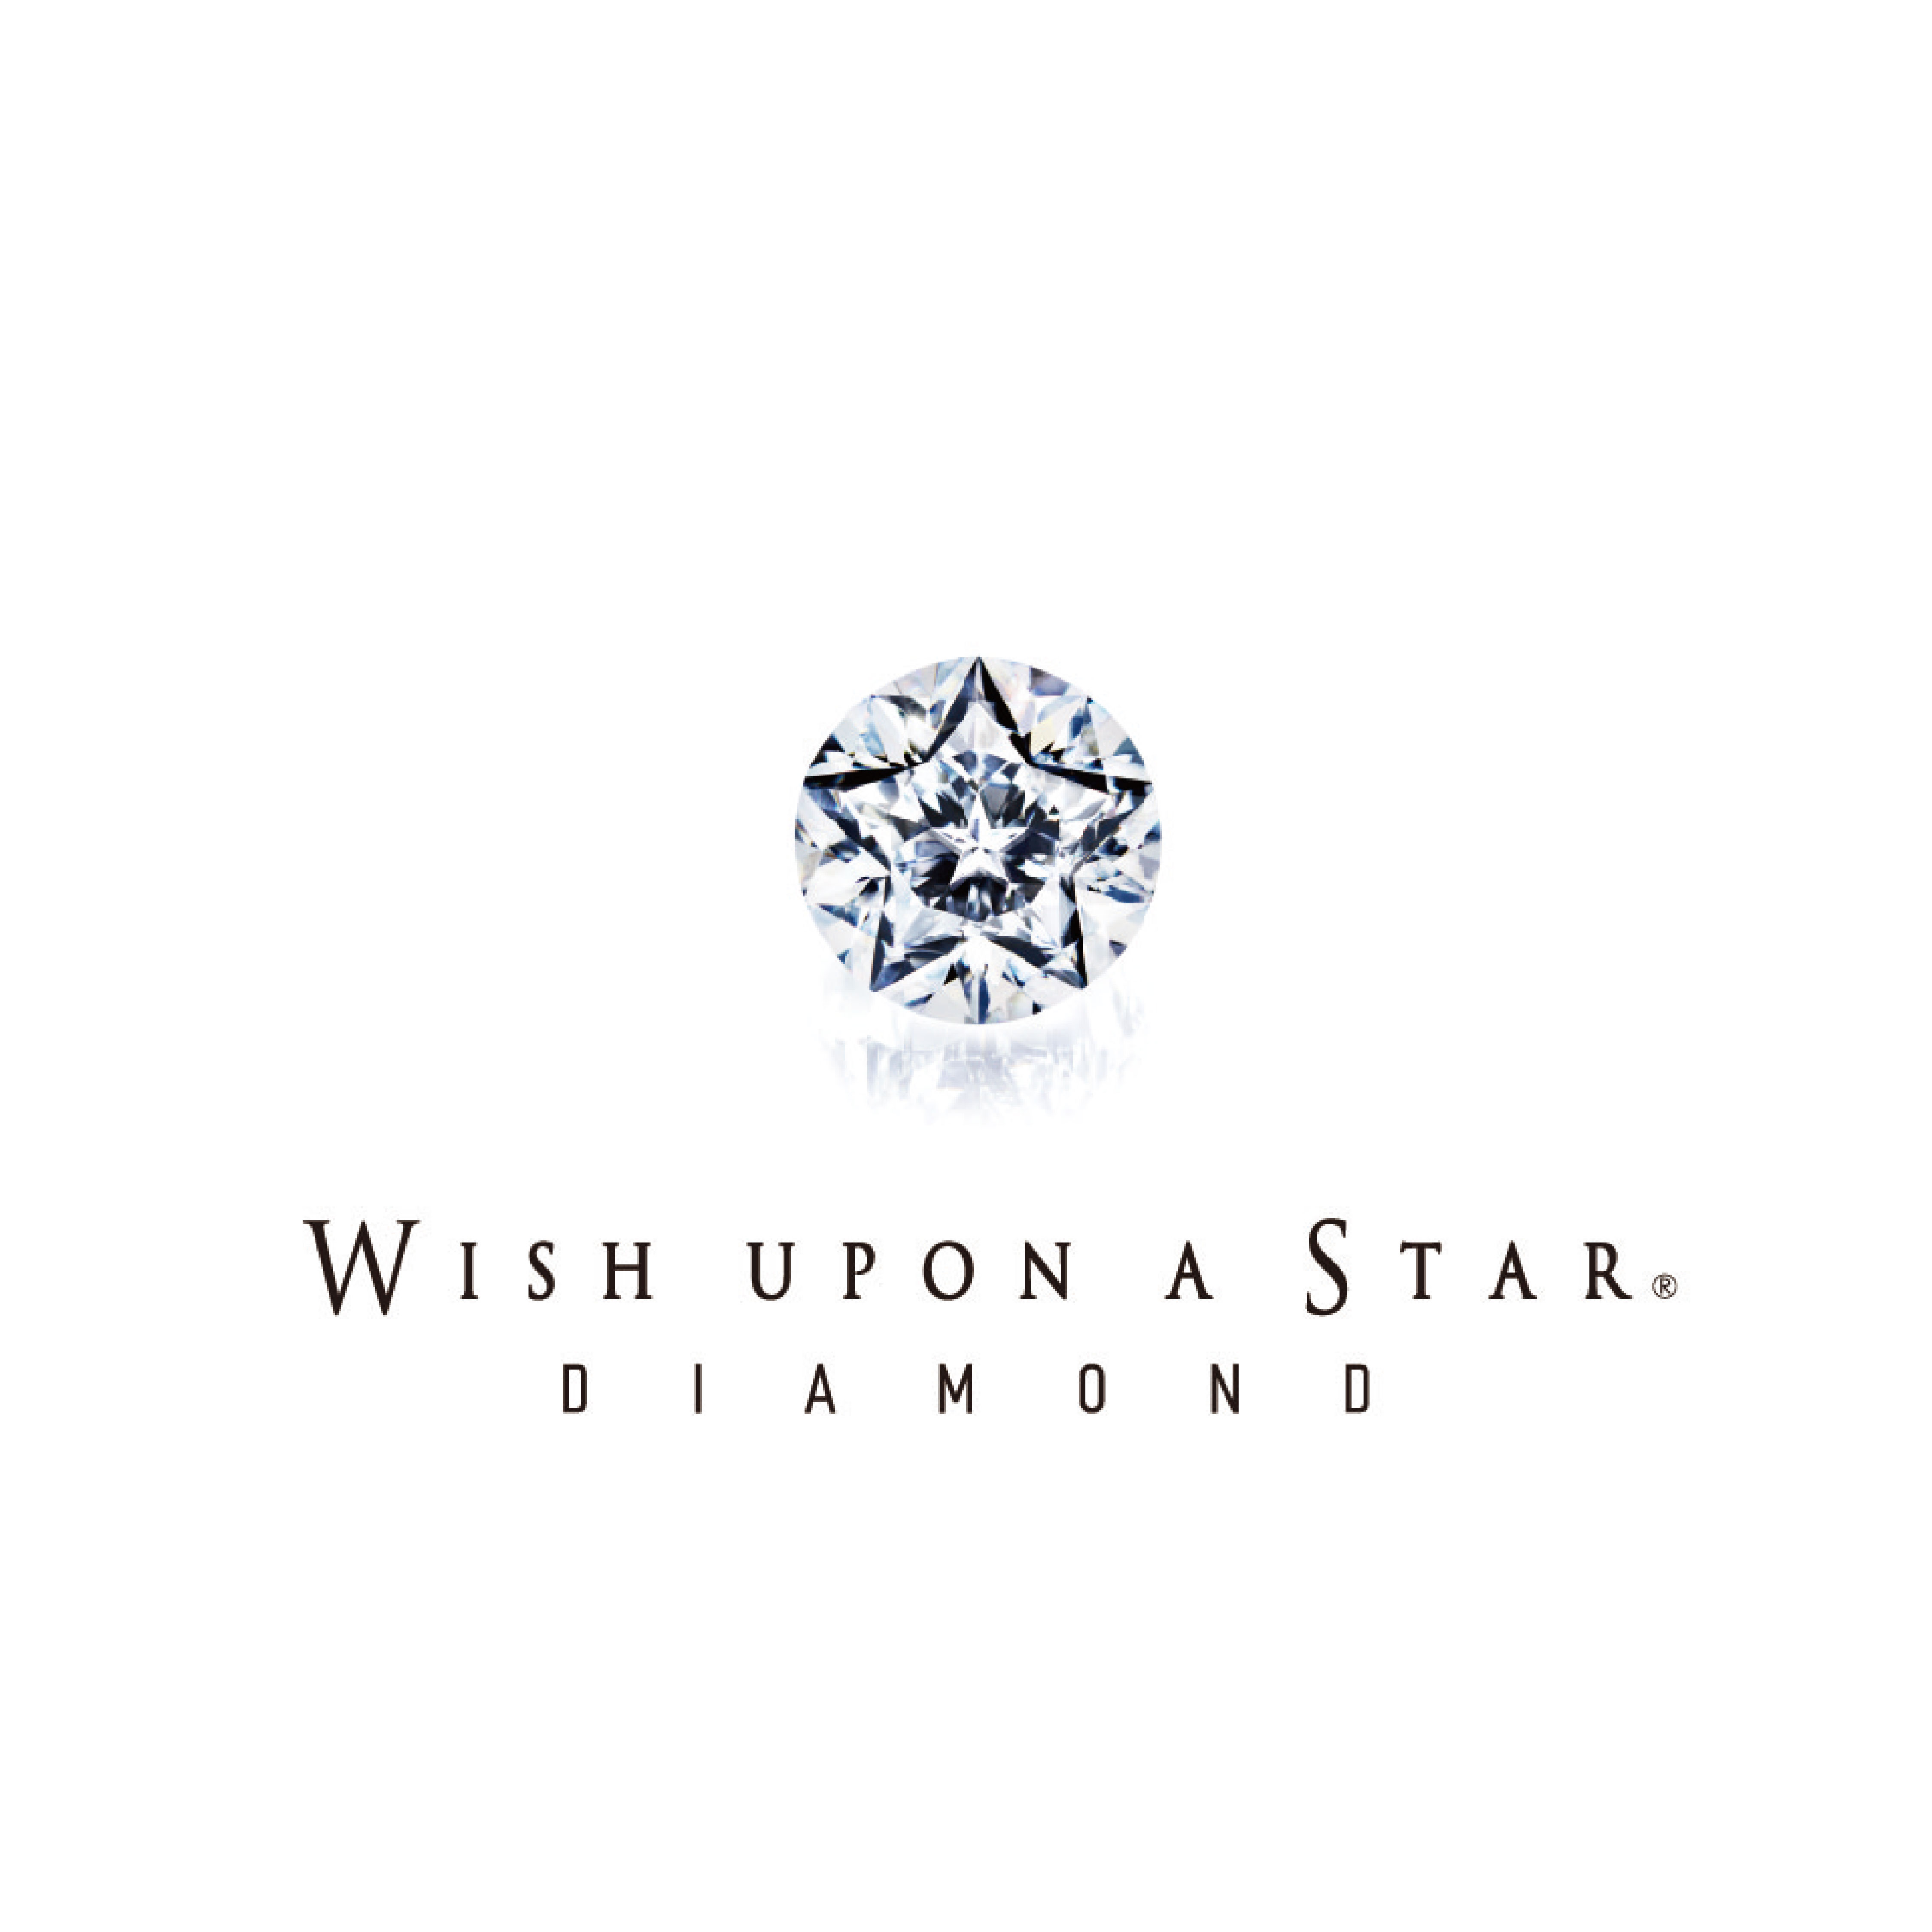 WISH UPON A STAR® DIAMOND